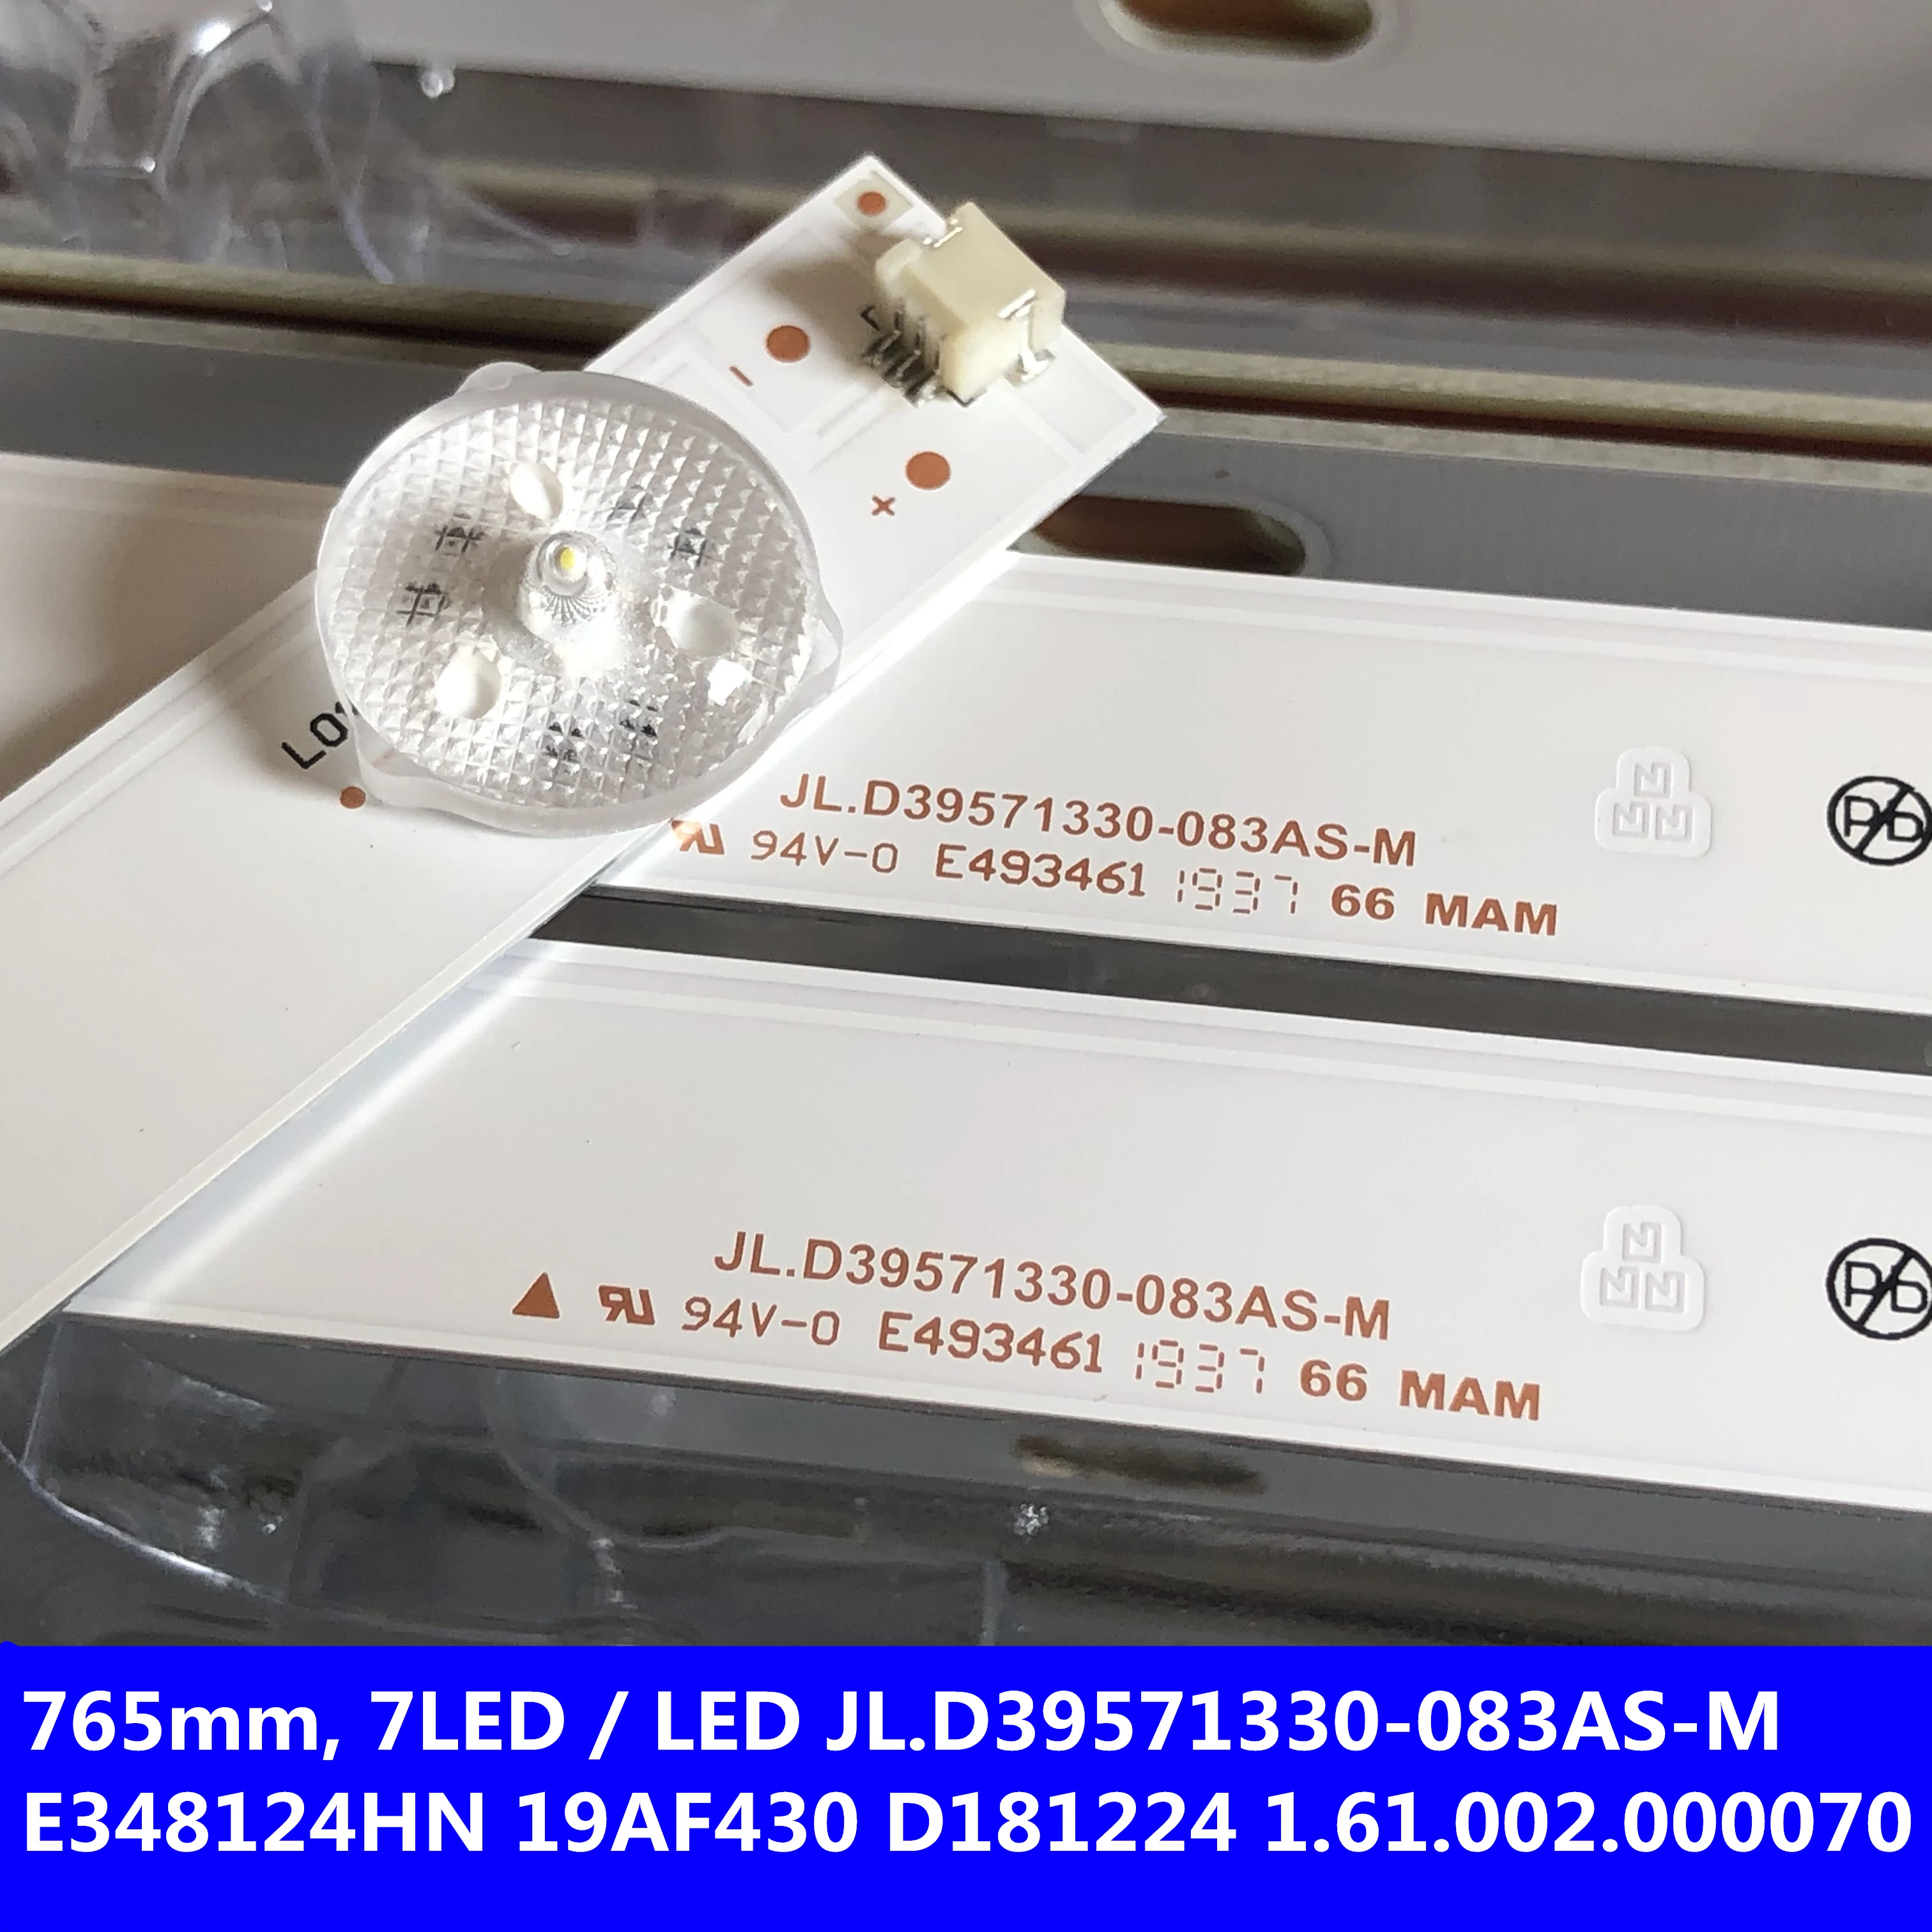 

1set=3pcs 7leds 765mm LED Backlight For JL.D39571330-083AS-M E348124HN, 19AF430, D181224, 1.61.002.000070